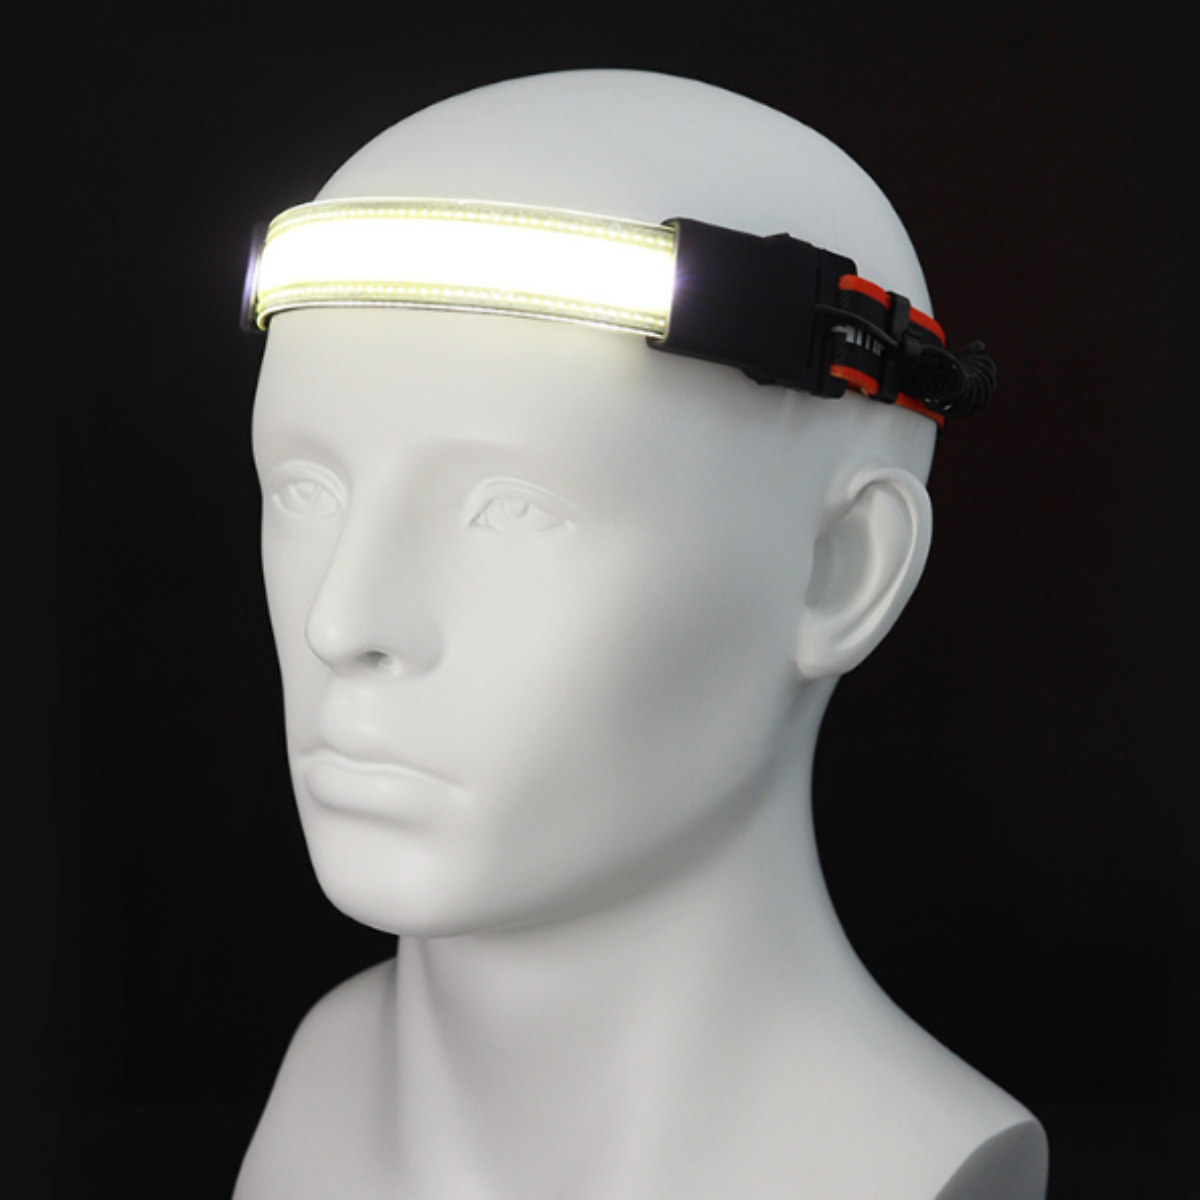 LACAMAX doppelte Flutlicht-Stirnlampe Intensität, Gummiband - Weiß verstellbares mit Lichtband-Stirnlampe hoher Lichtquelle